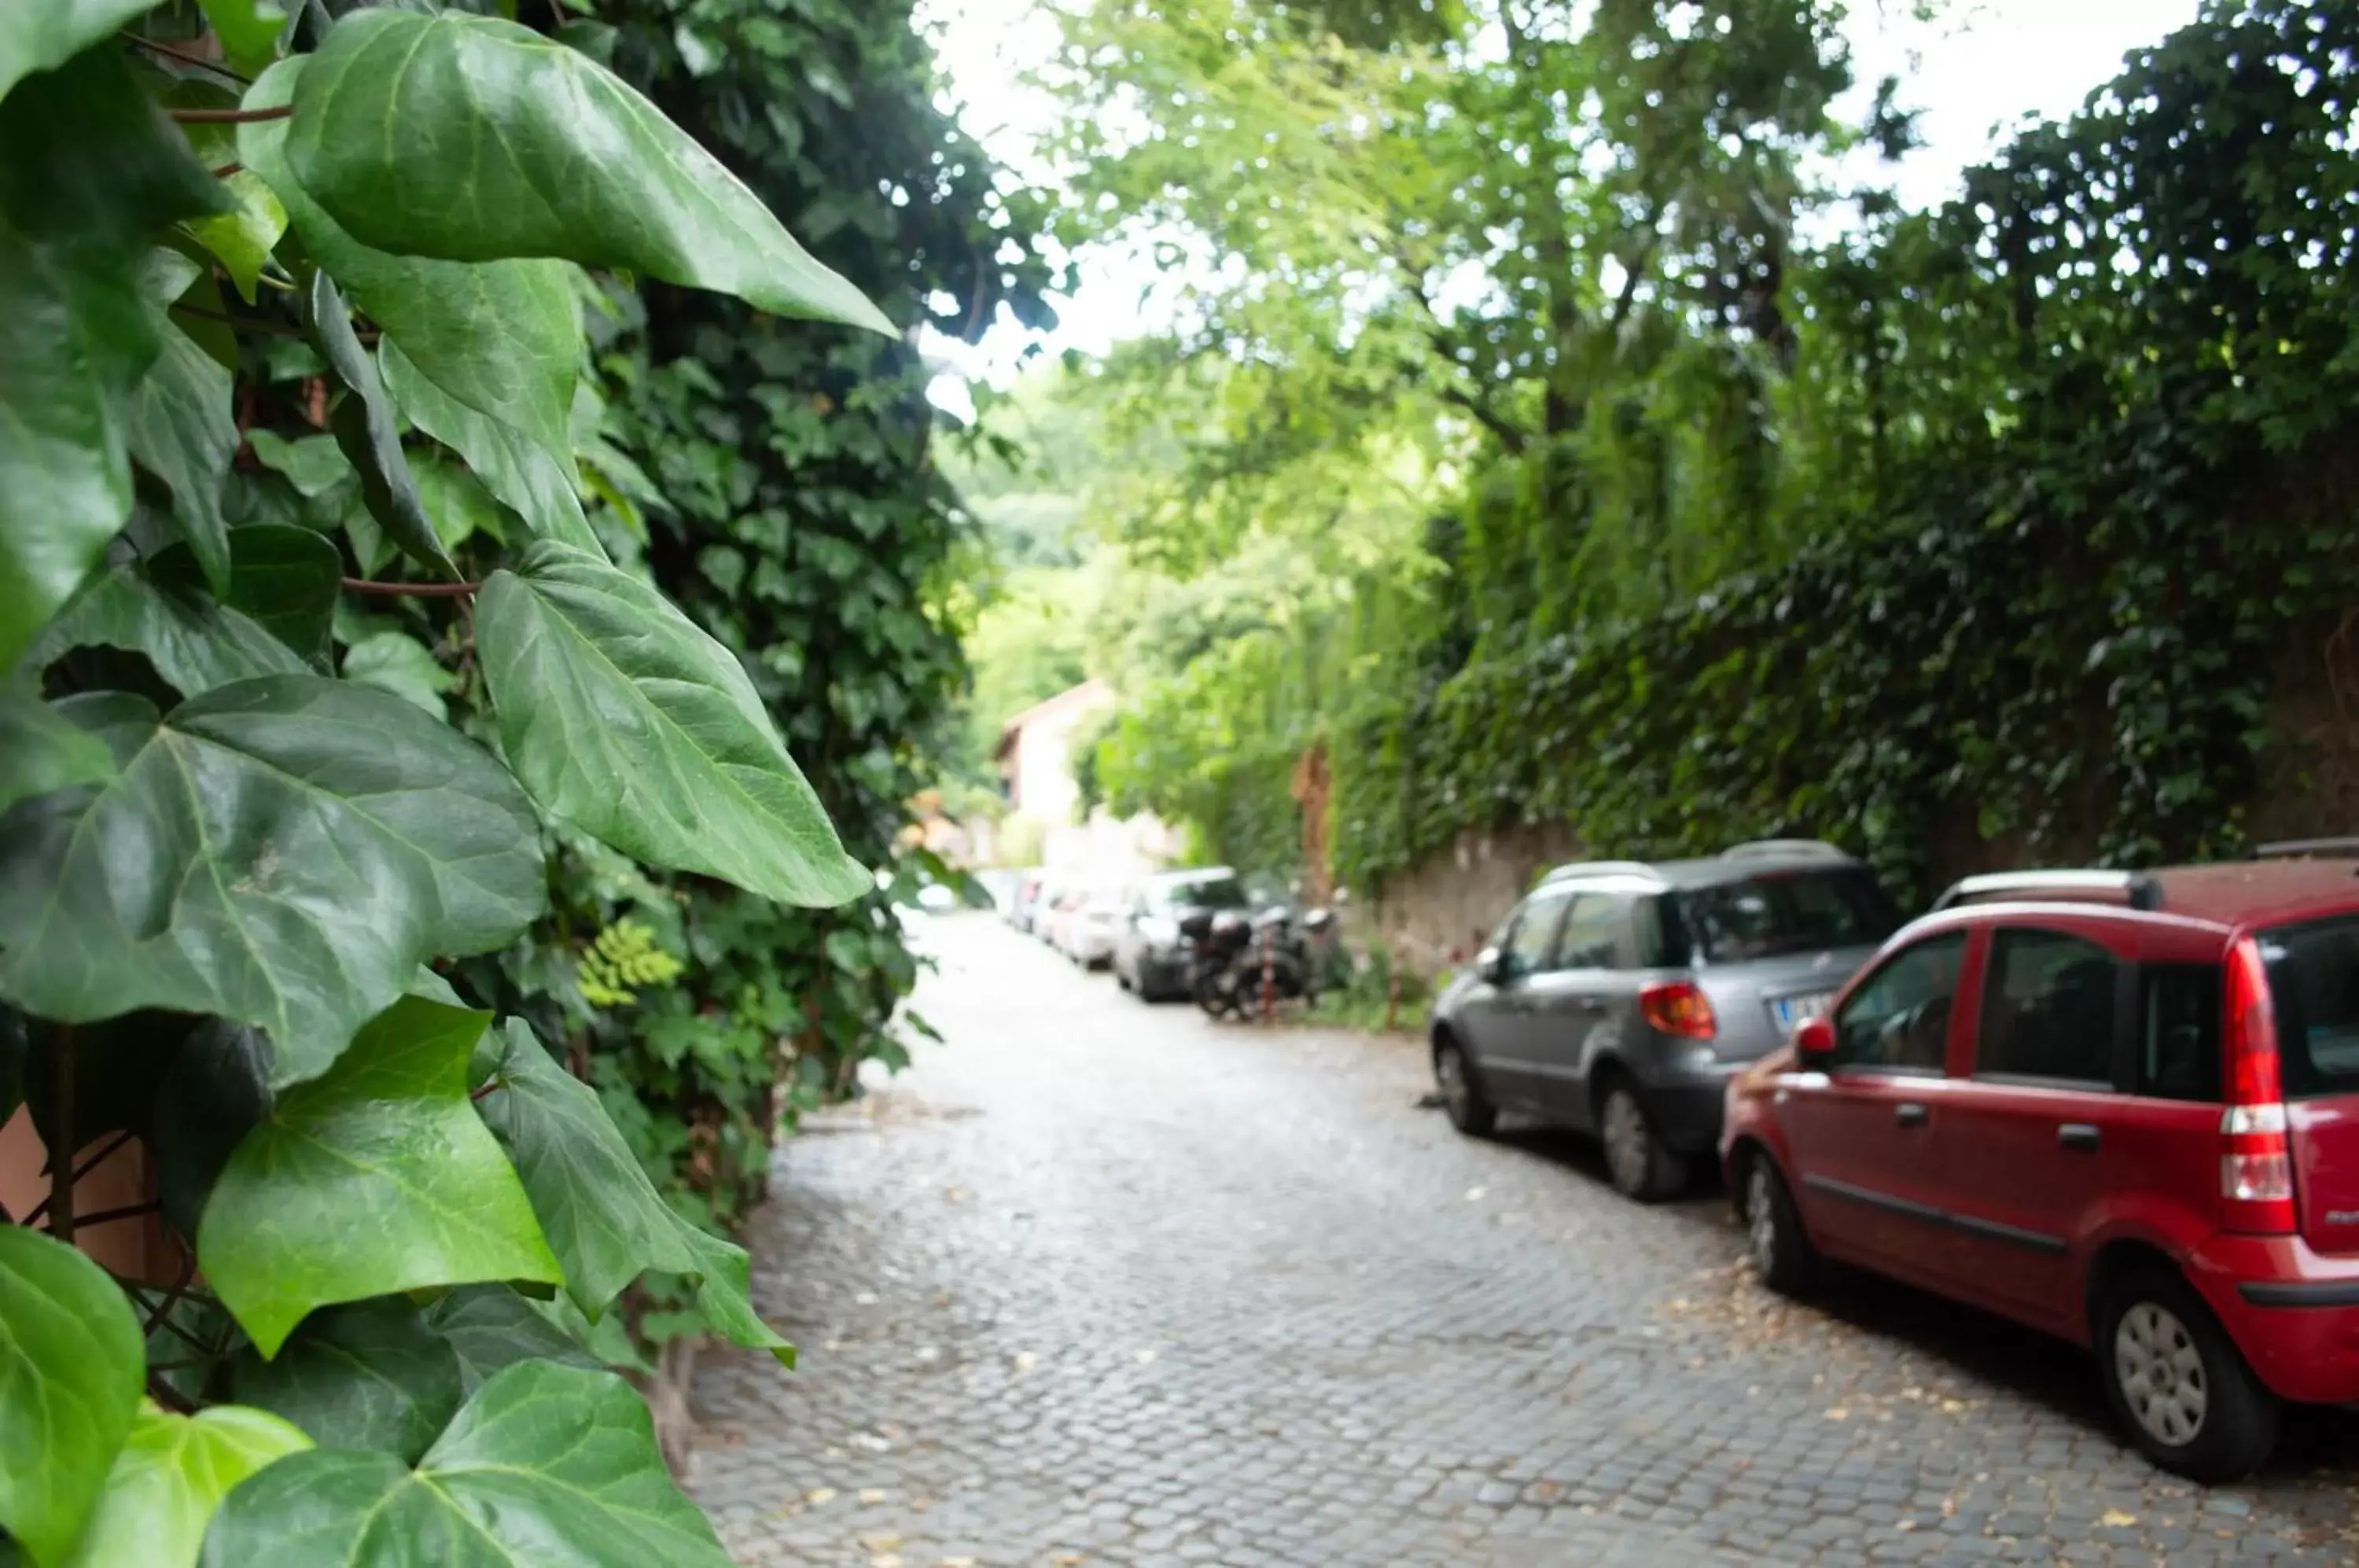 Street view in Villa Riari Garden